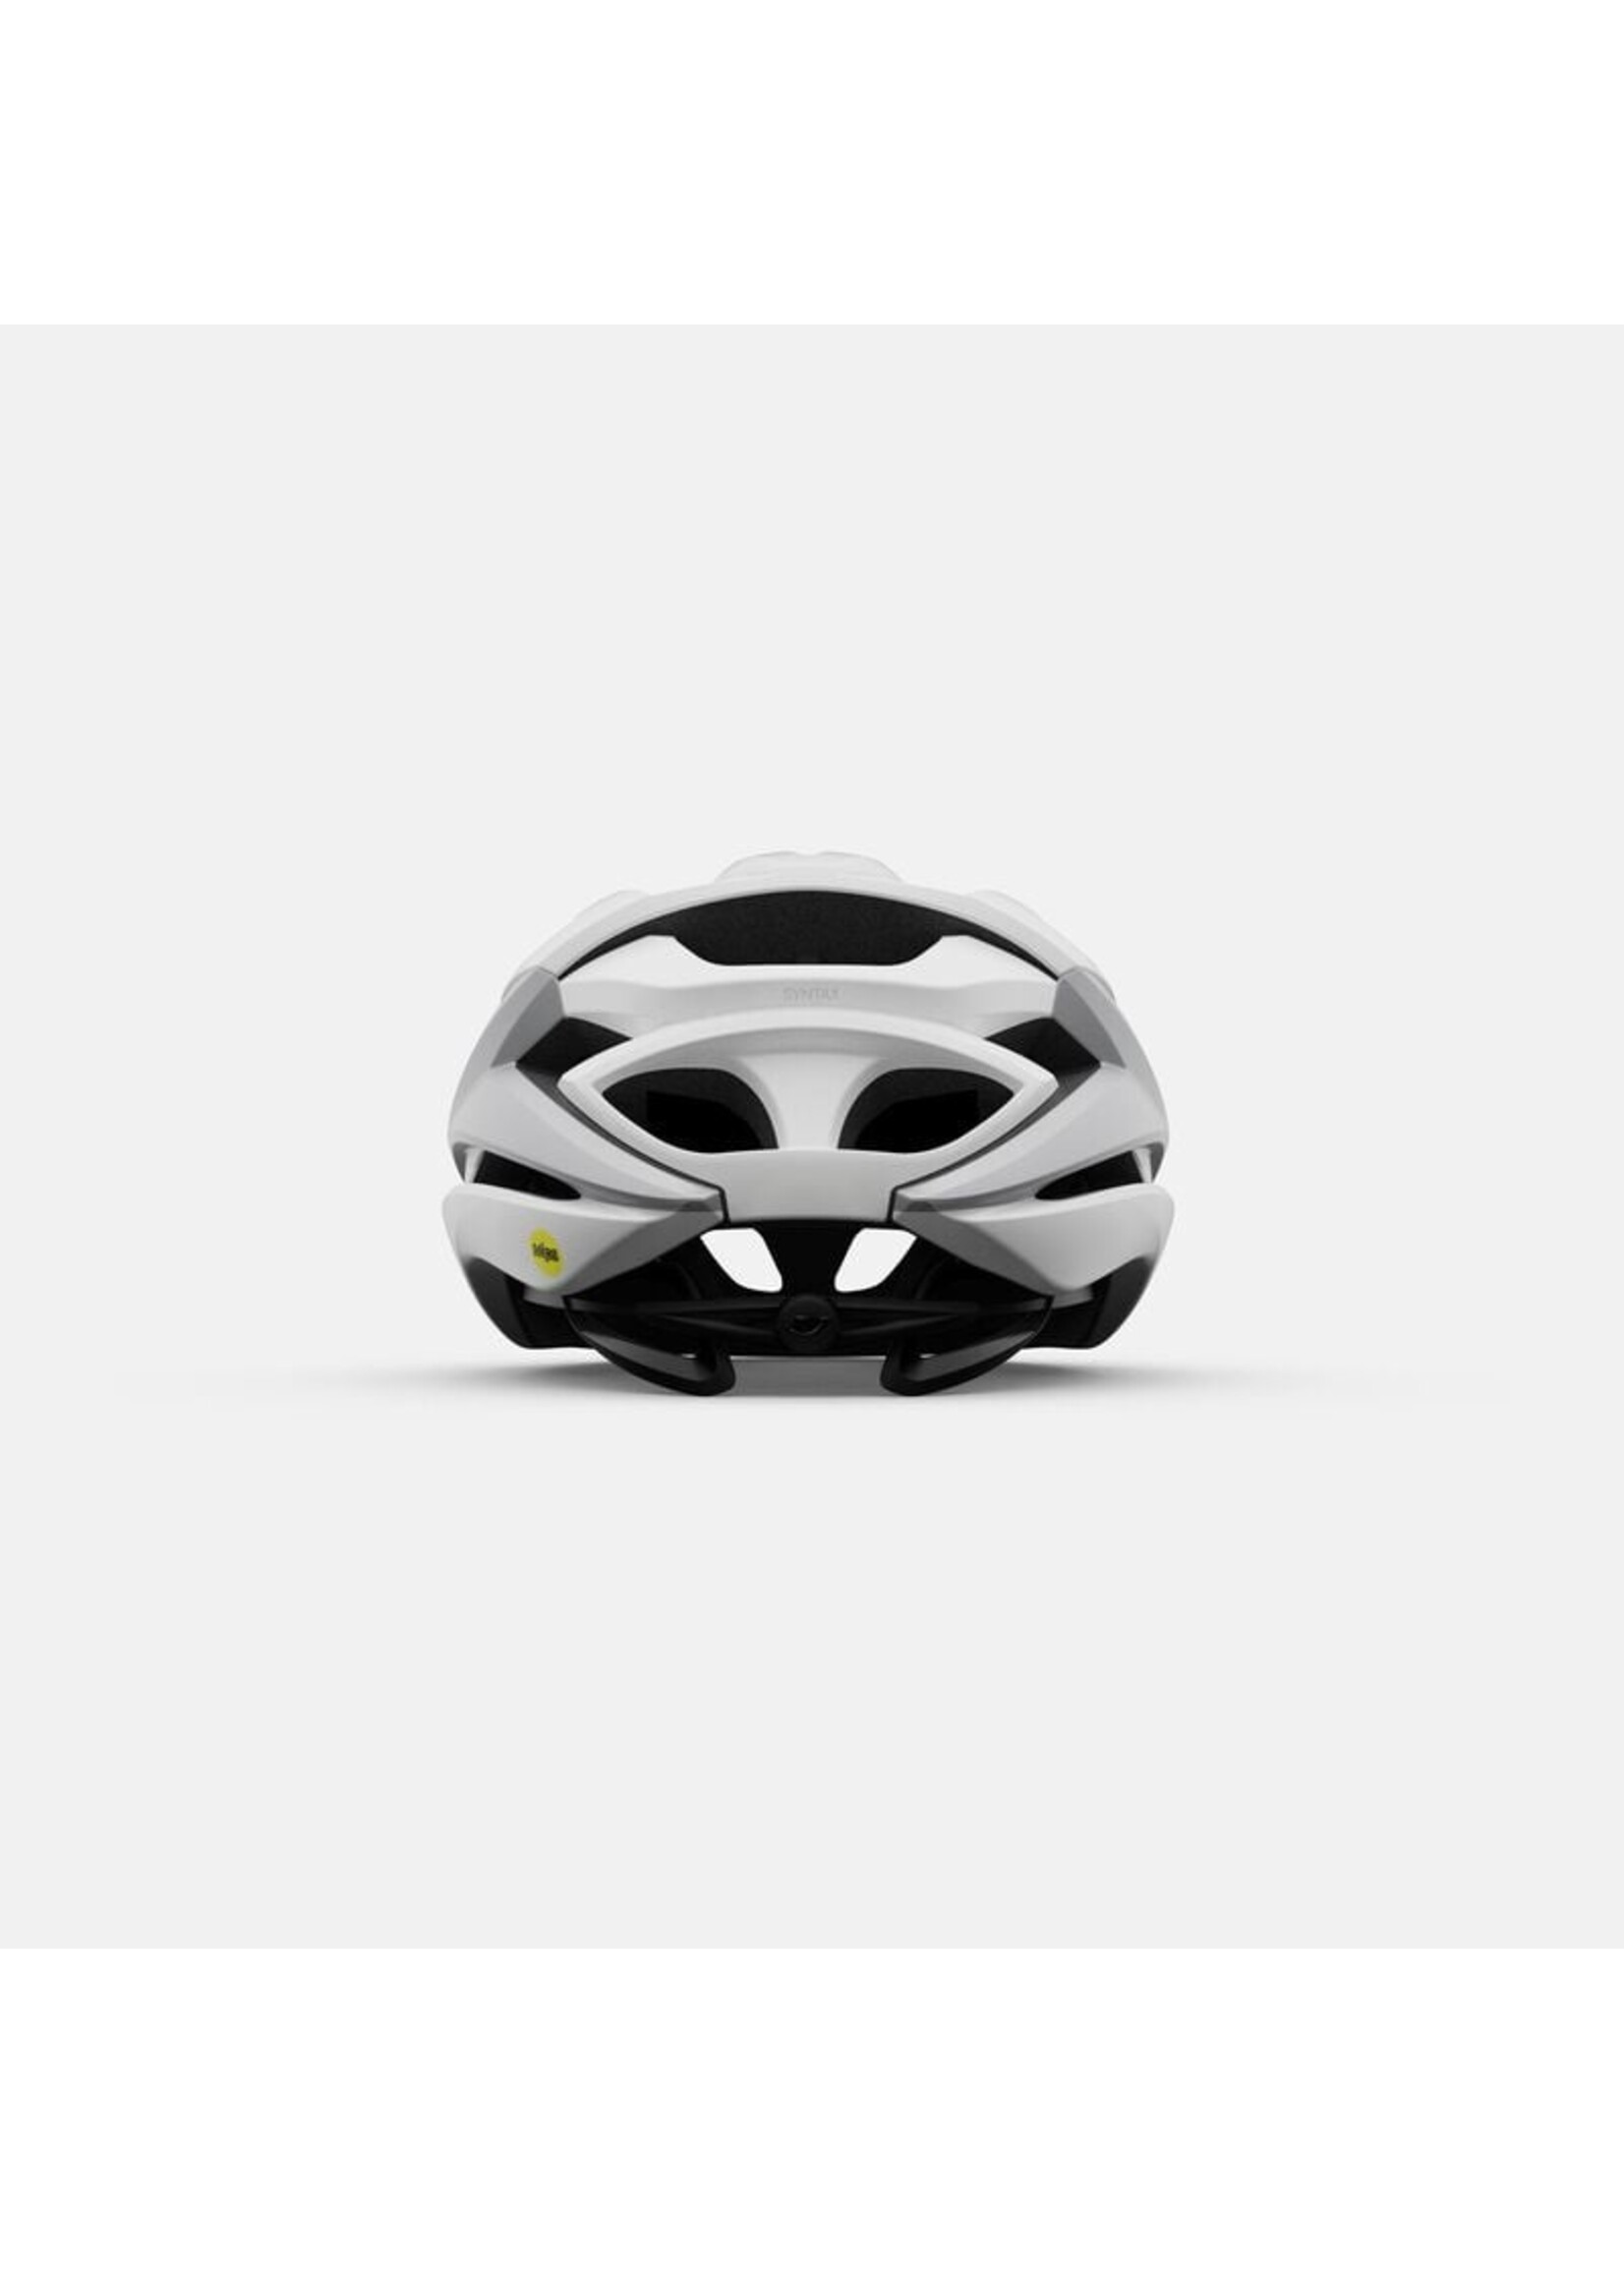 Giro GIRO Syntax MIPS Helmet